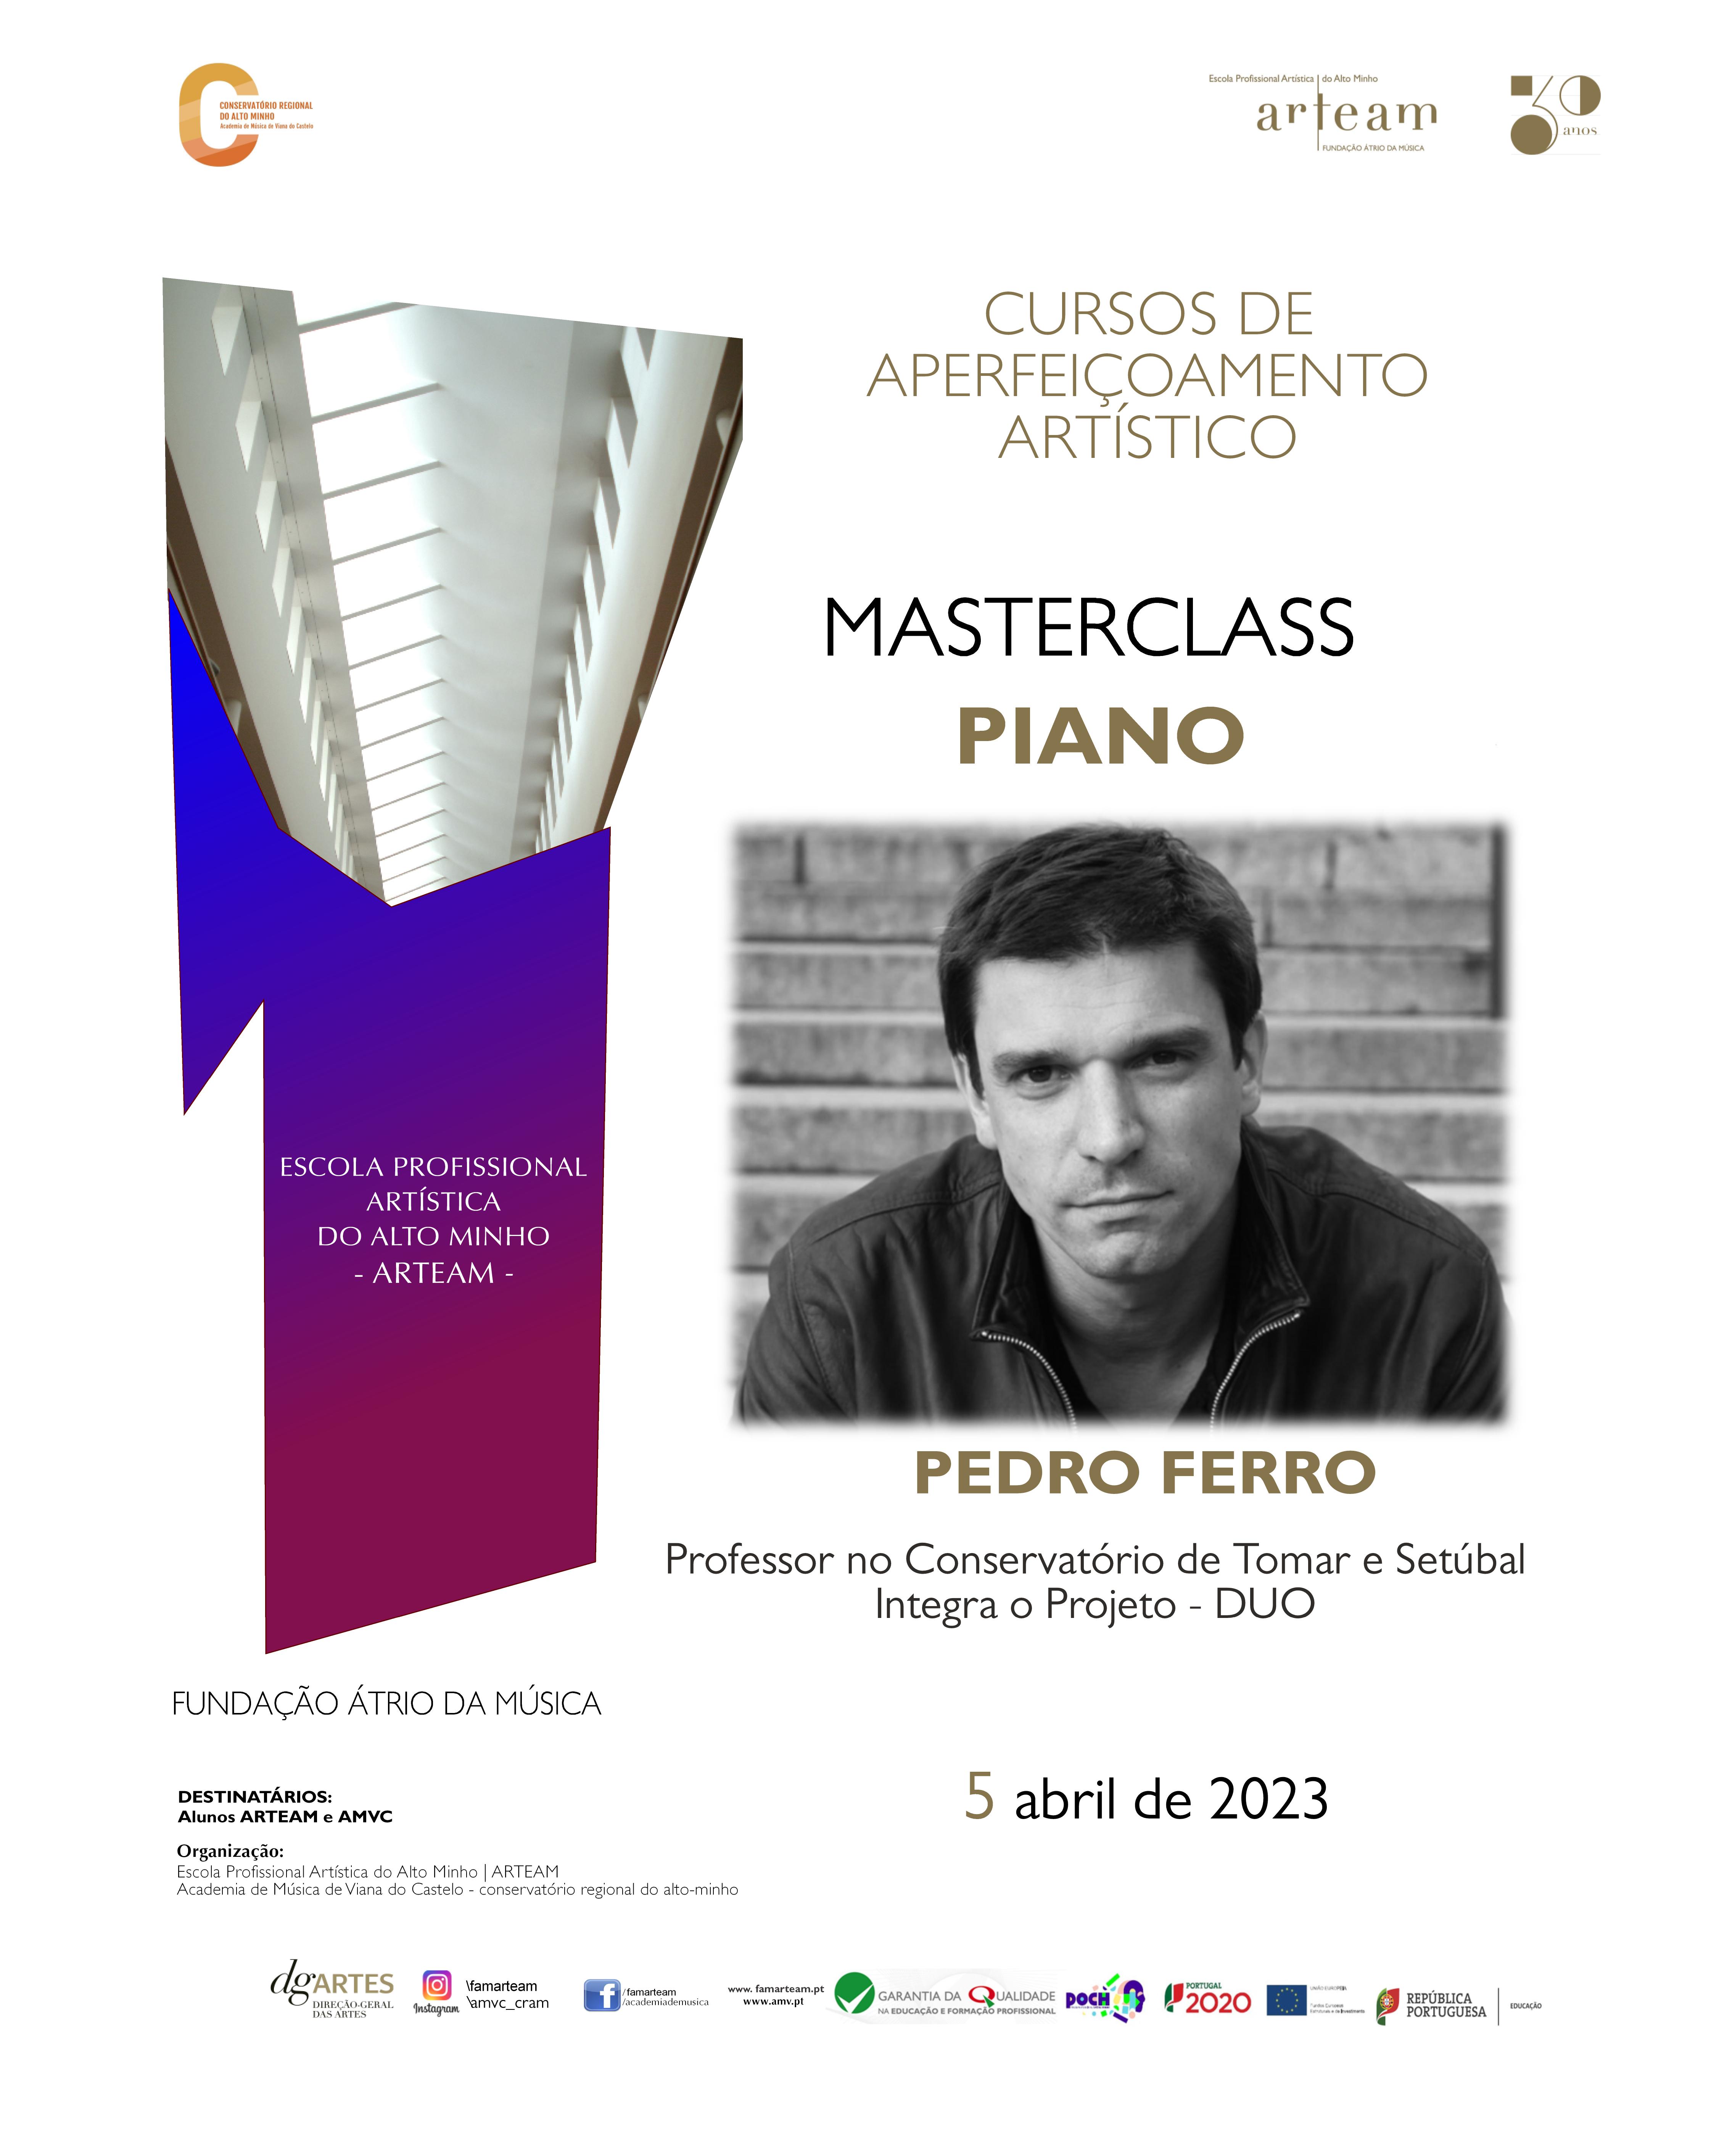 Masterclasse de Piano por Pedro Ferro